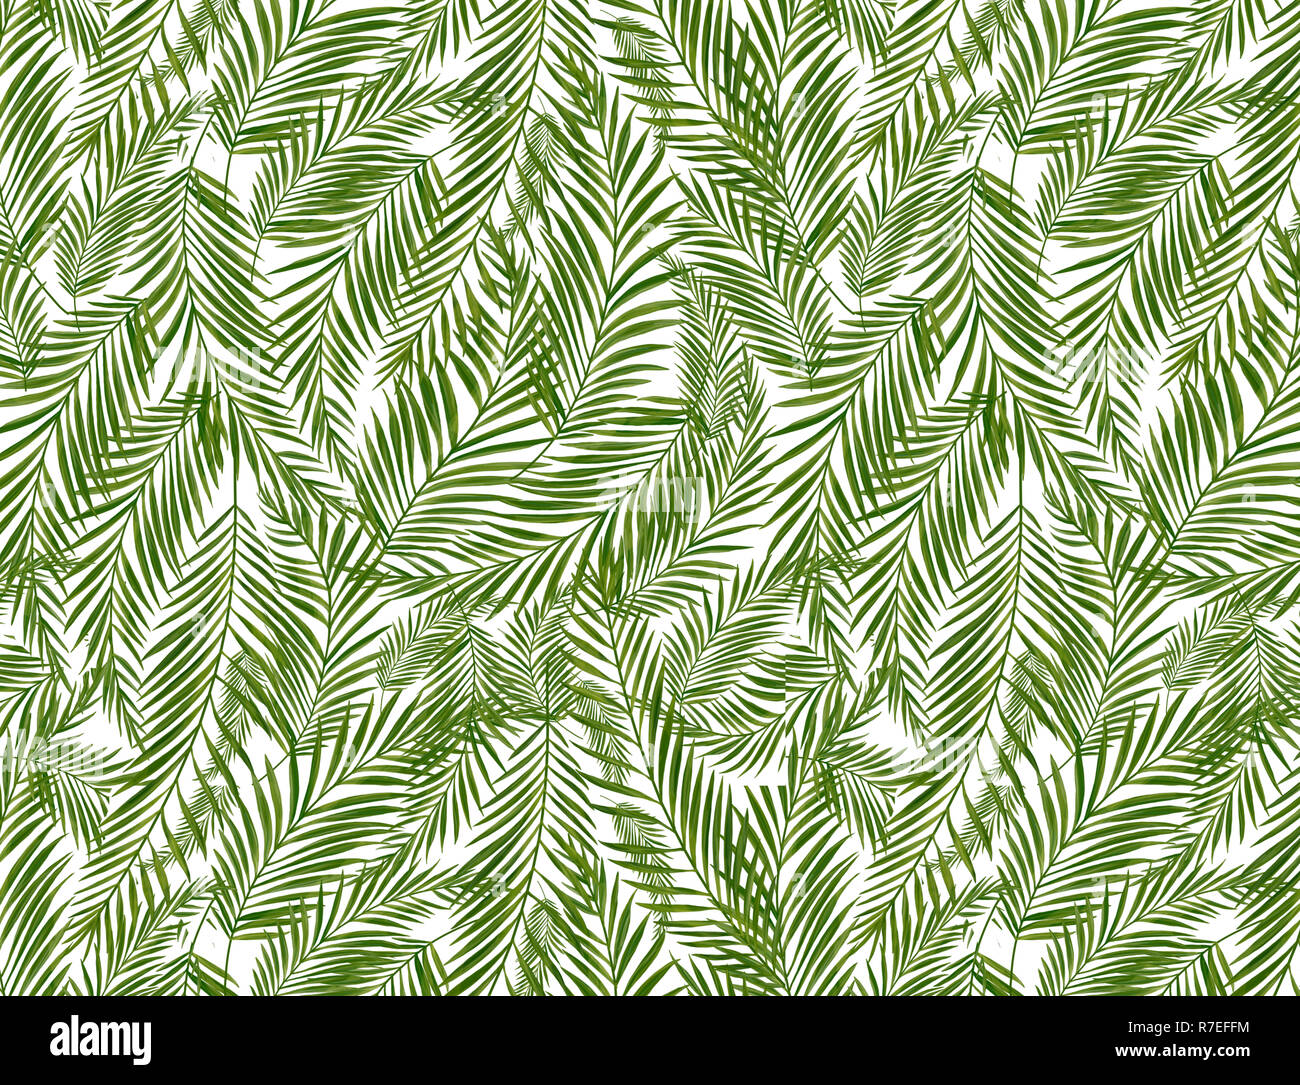 Feuilles de palmier tropical jungle florale, feuilles de fond Banque D'Images